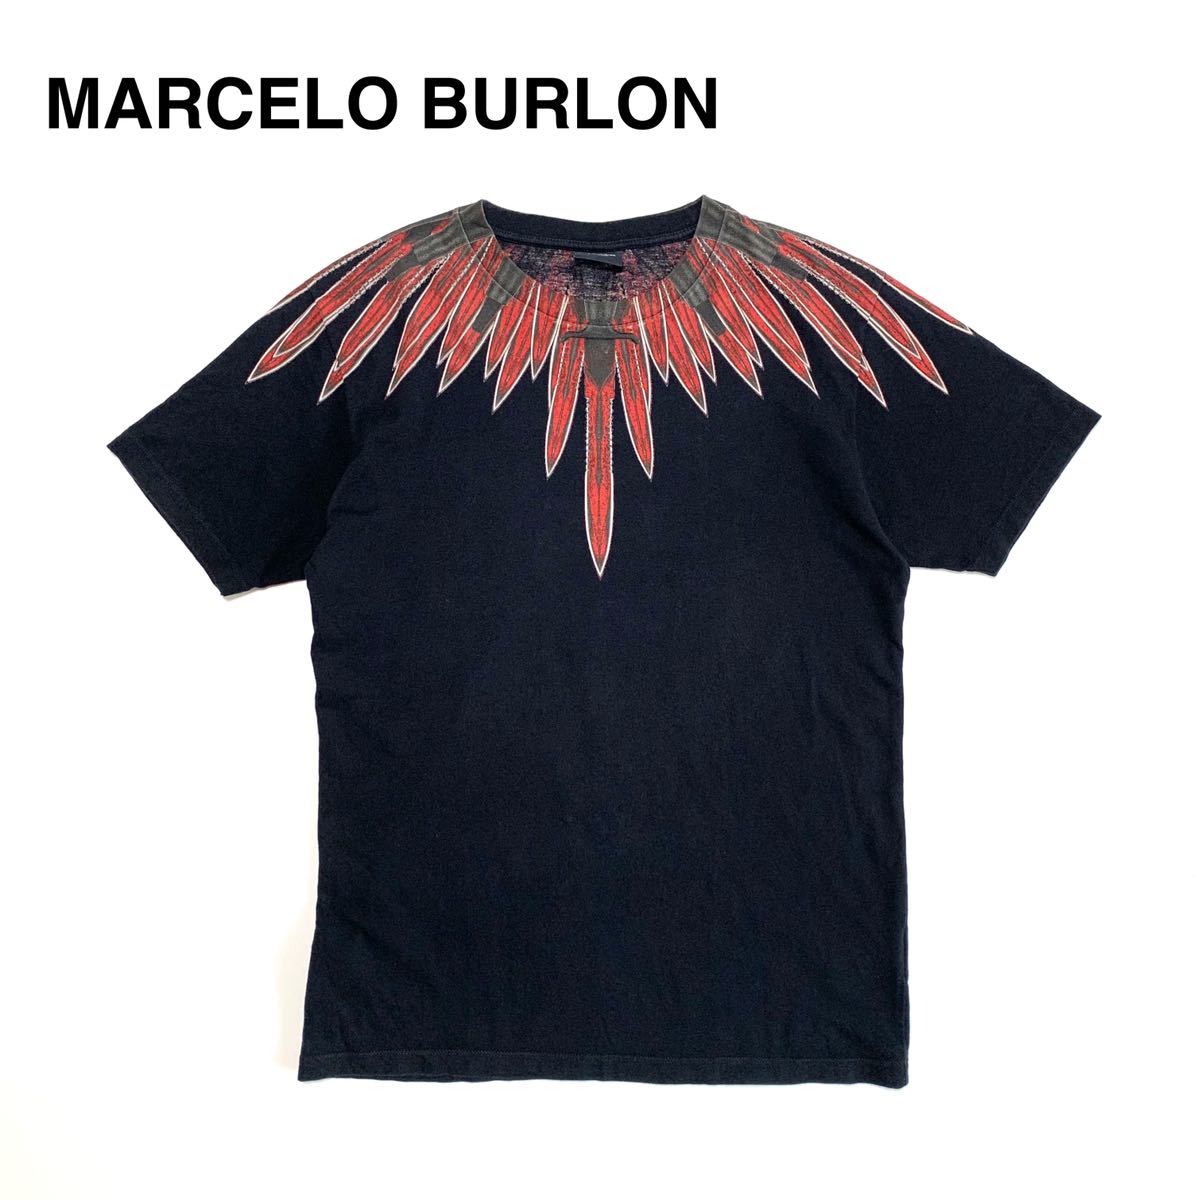 ☆良品 マルセロバーロン MARCELO BURLON ウイング フェザー プリント Tシャツ 黒 イタリア製 古着 ヴィンテージ vintage ロック 90s